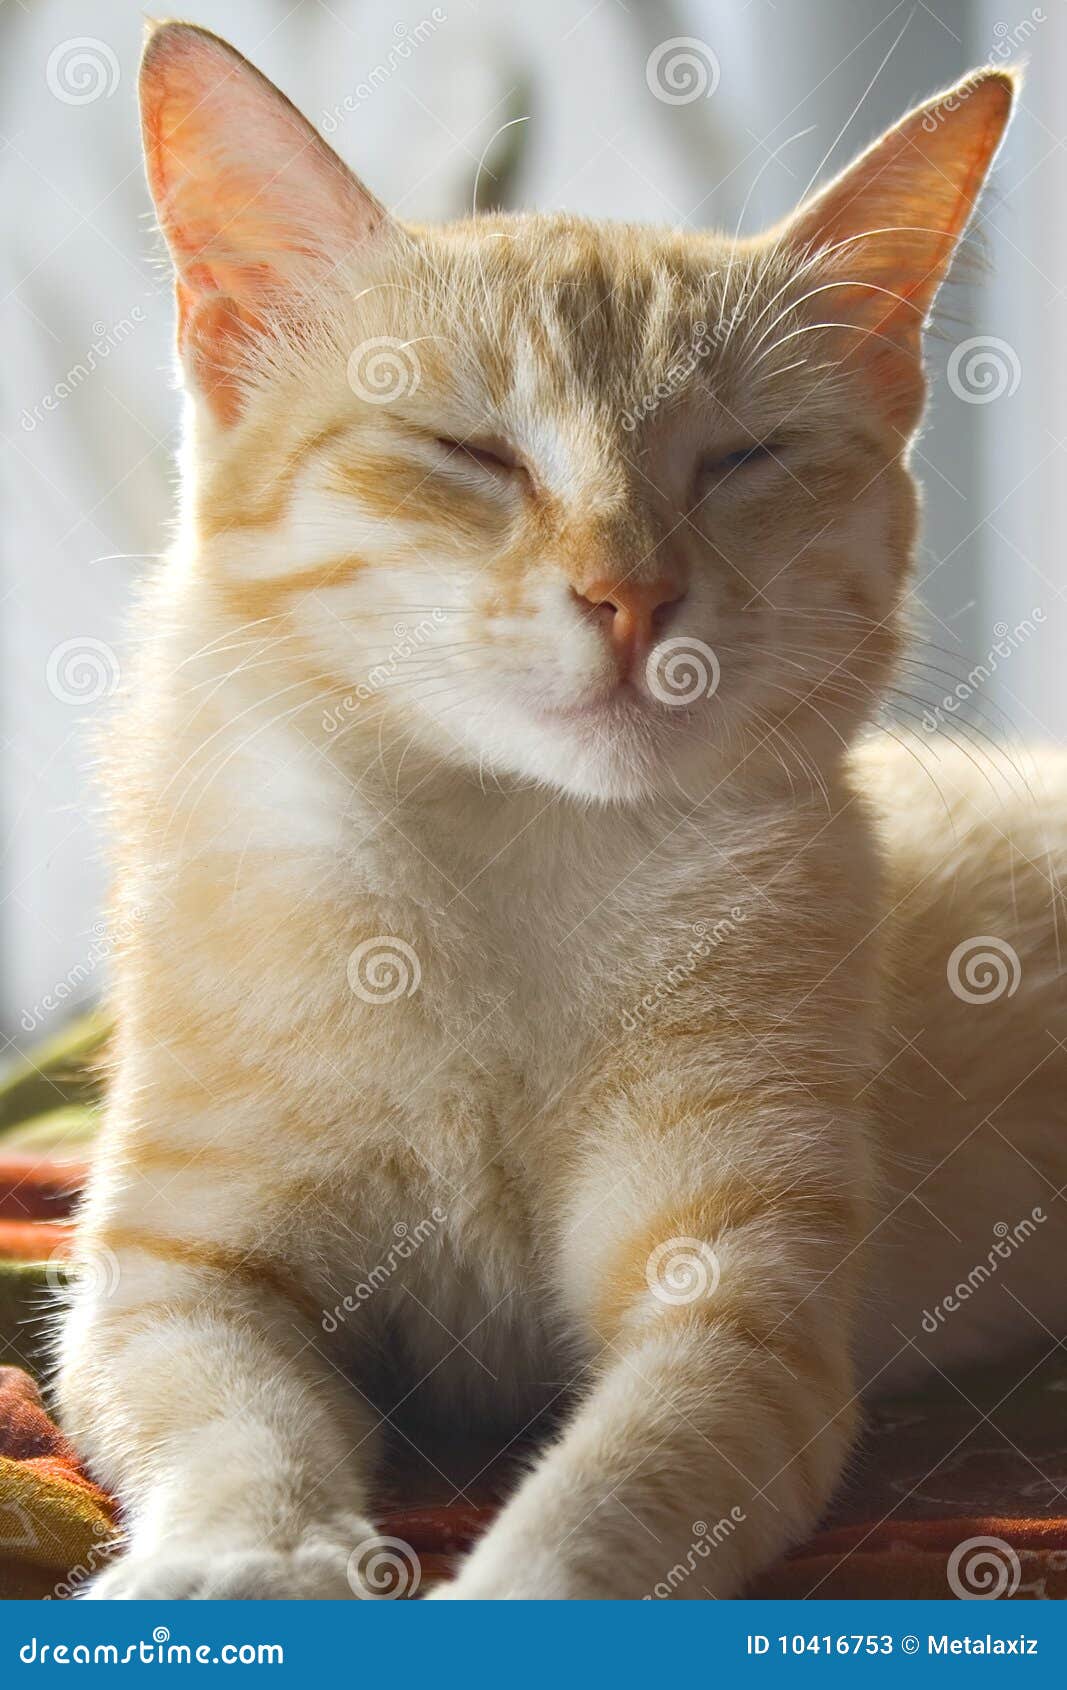 Sleepy Cat stock image. Image of domestic, sleepy, animal - 10416753